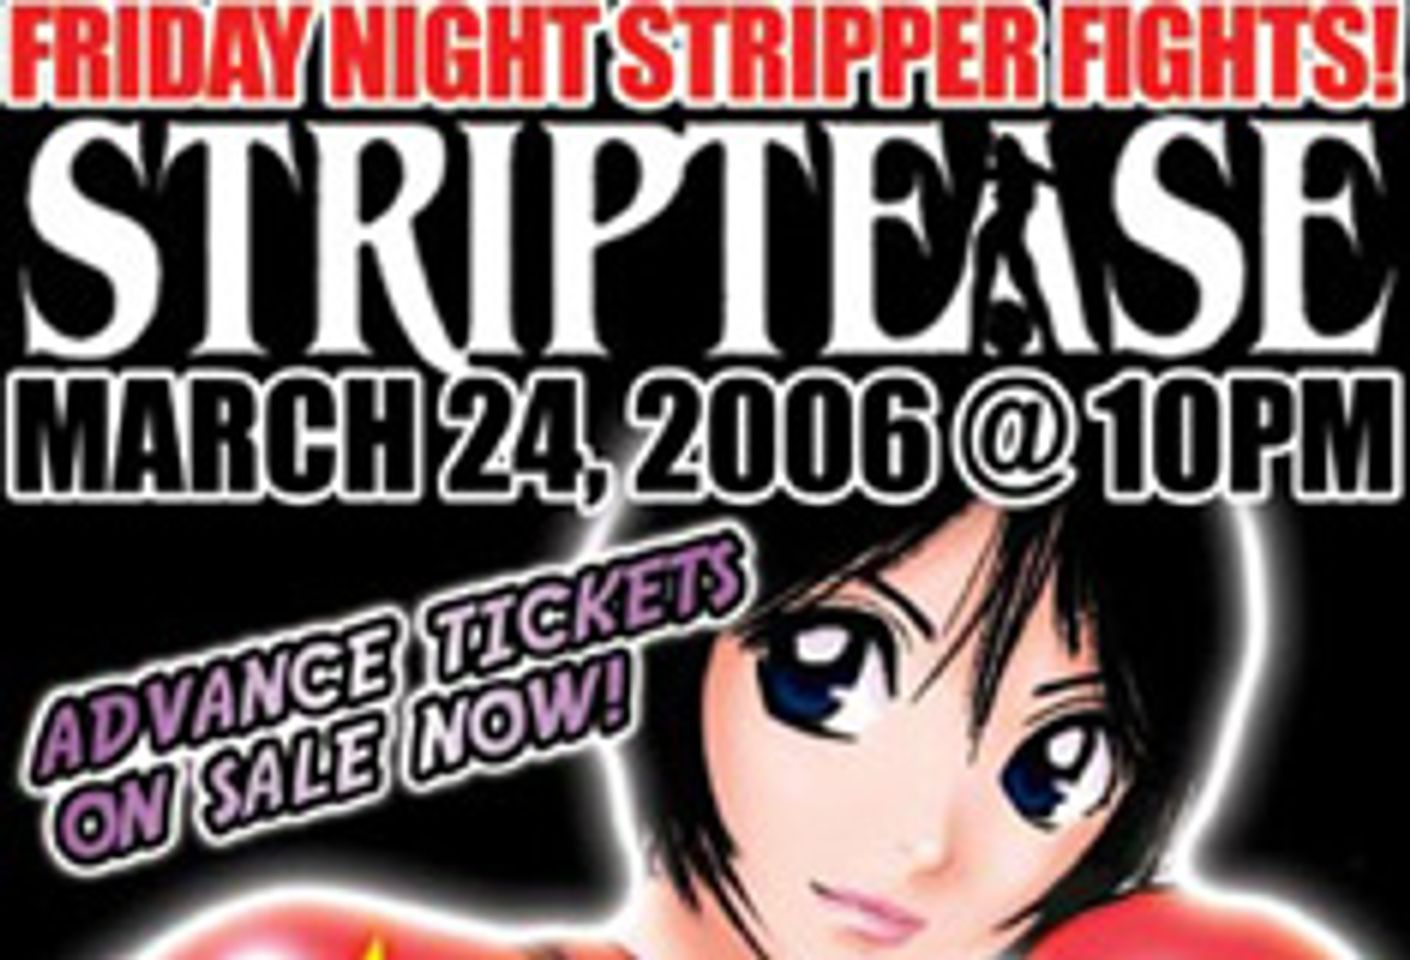 Striptease Vegas to Host Stripper Fights